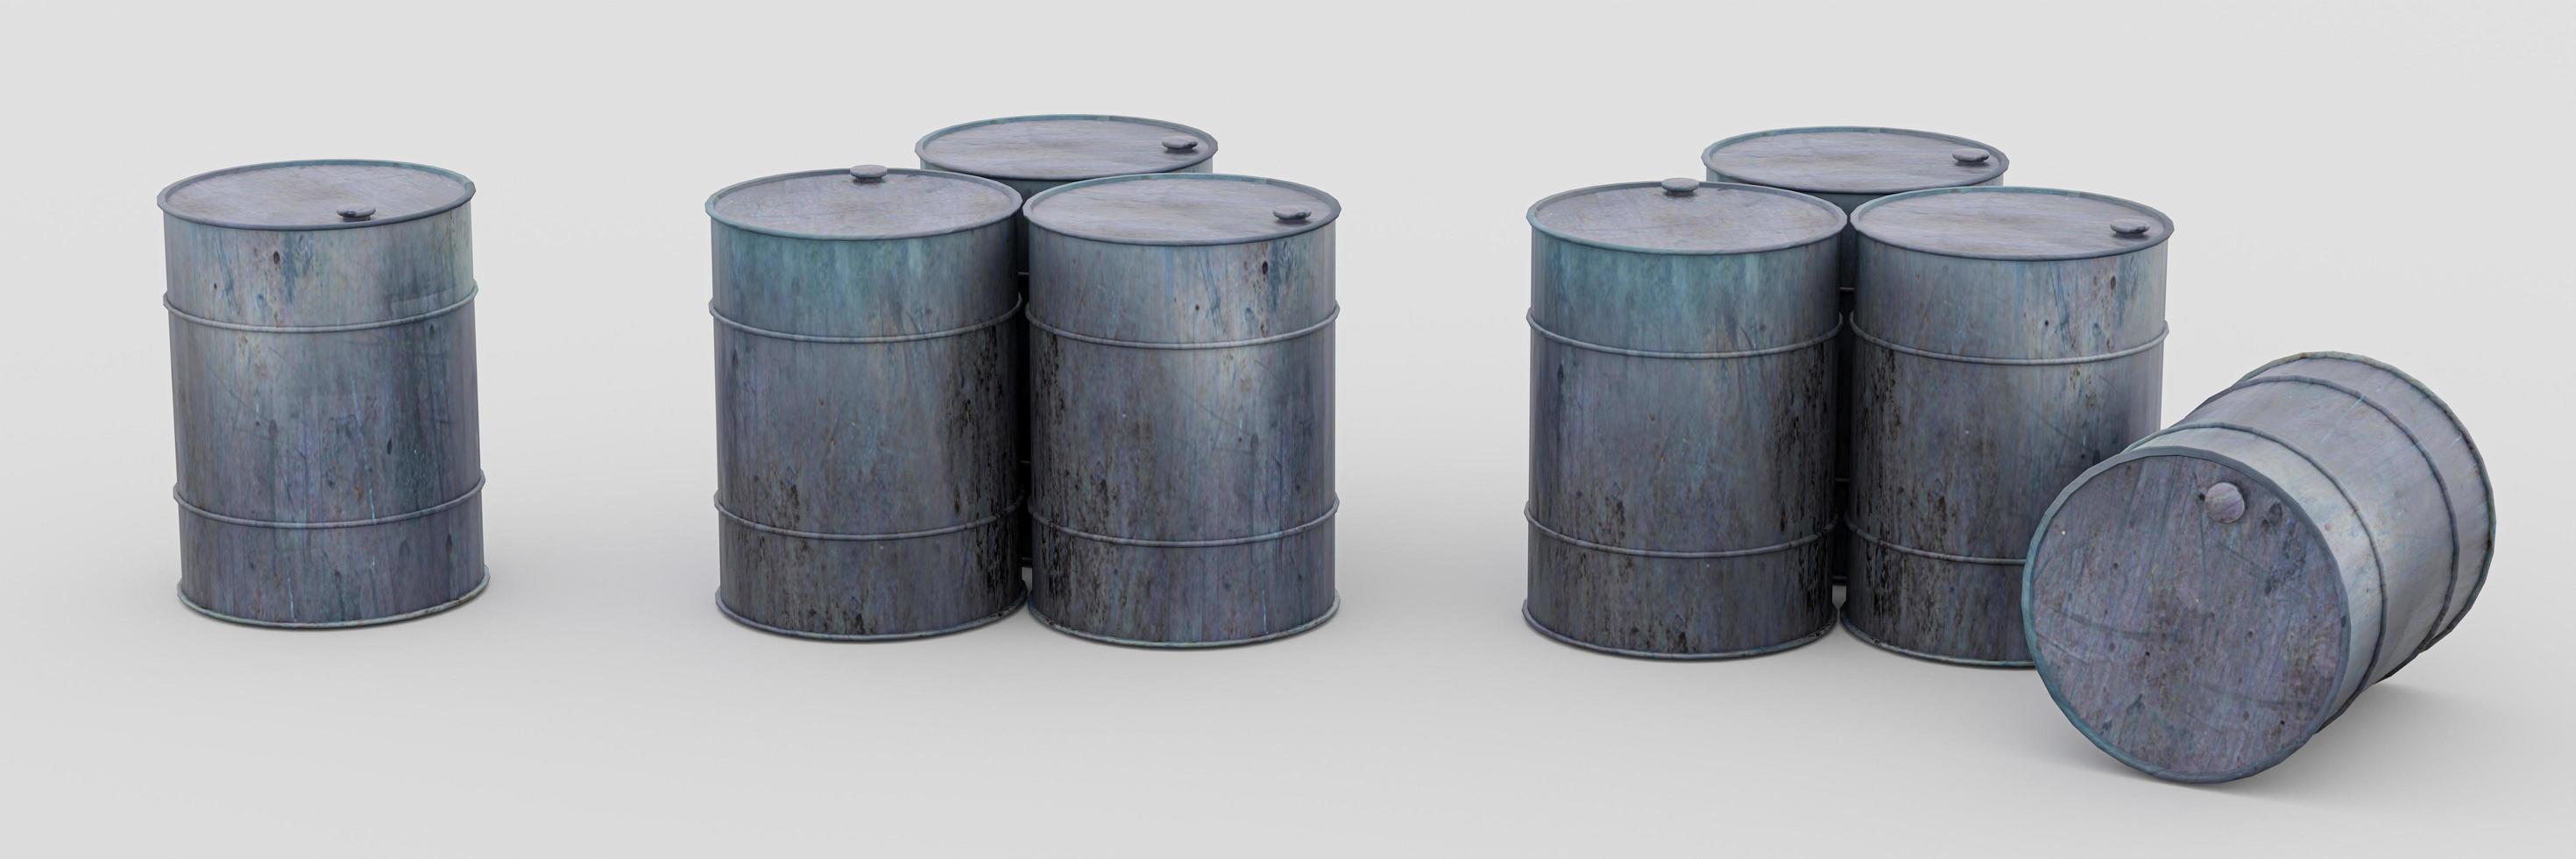 barril de aceite con tambor de aceite oxidado y con fugas. aislado sobre fondo blanco. representación 3d foto